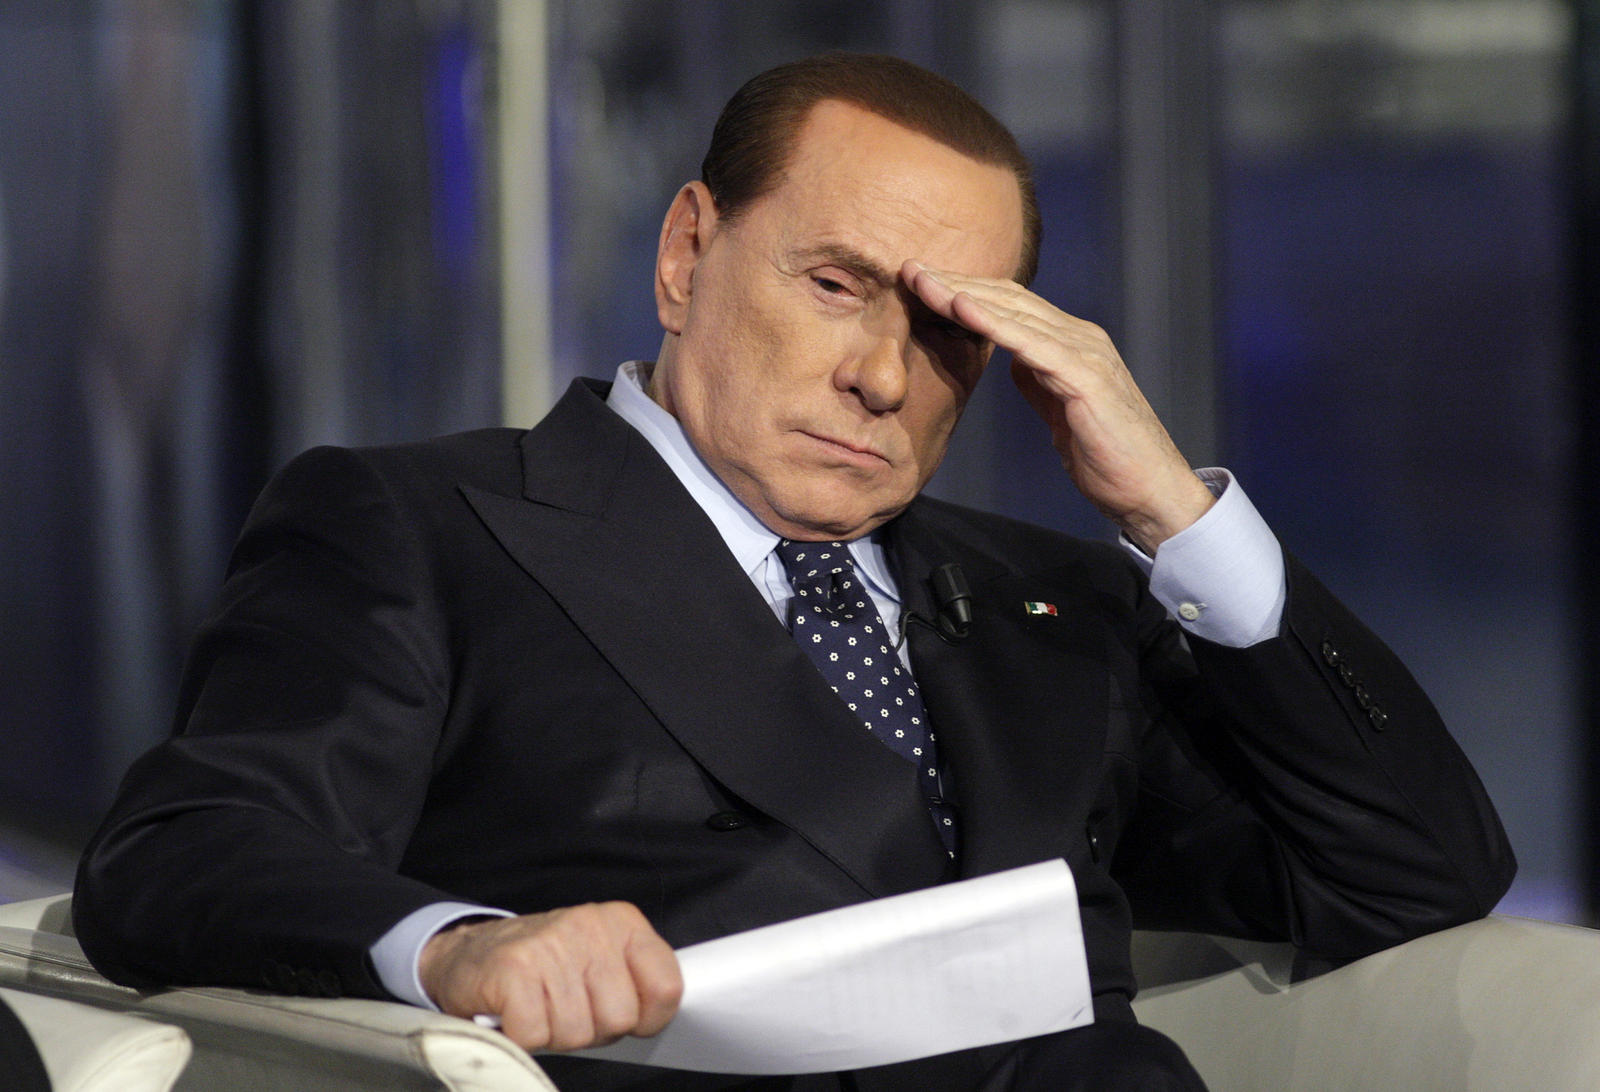 La più alta corte italiana conferma la pena detentiva di Berlusconi